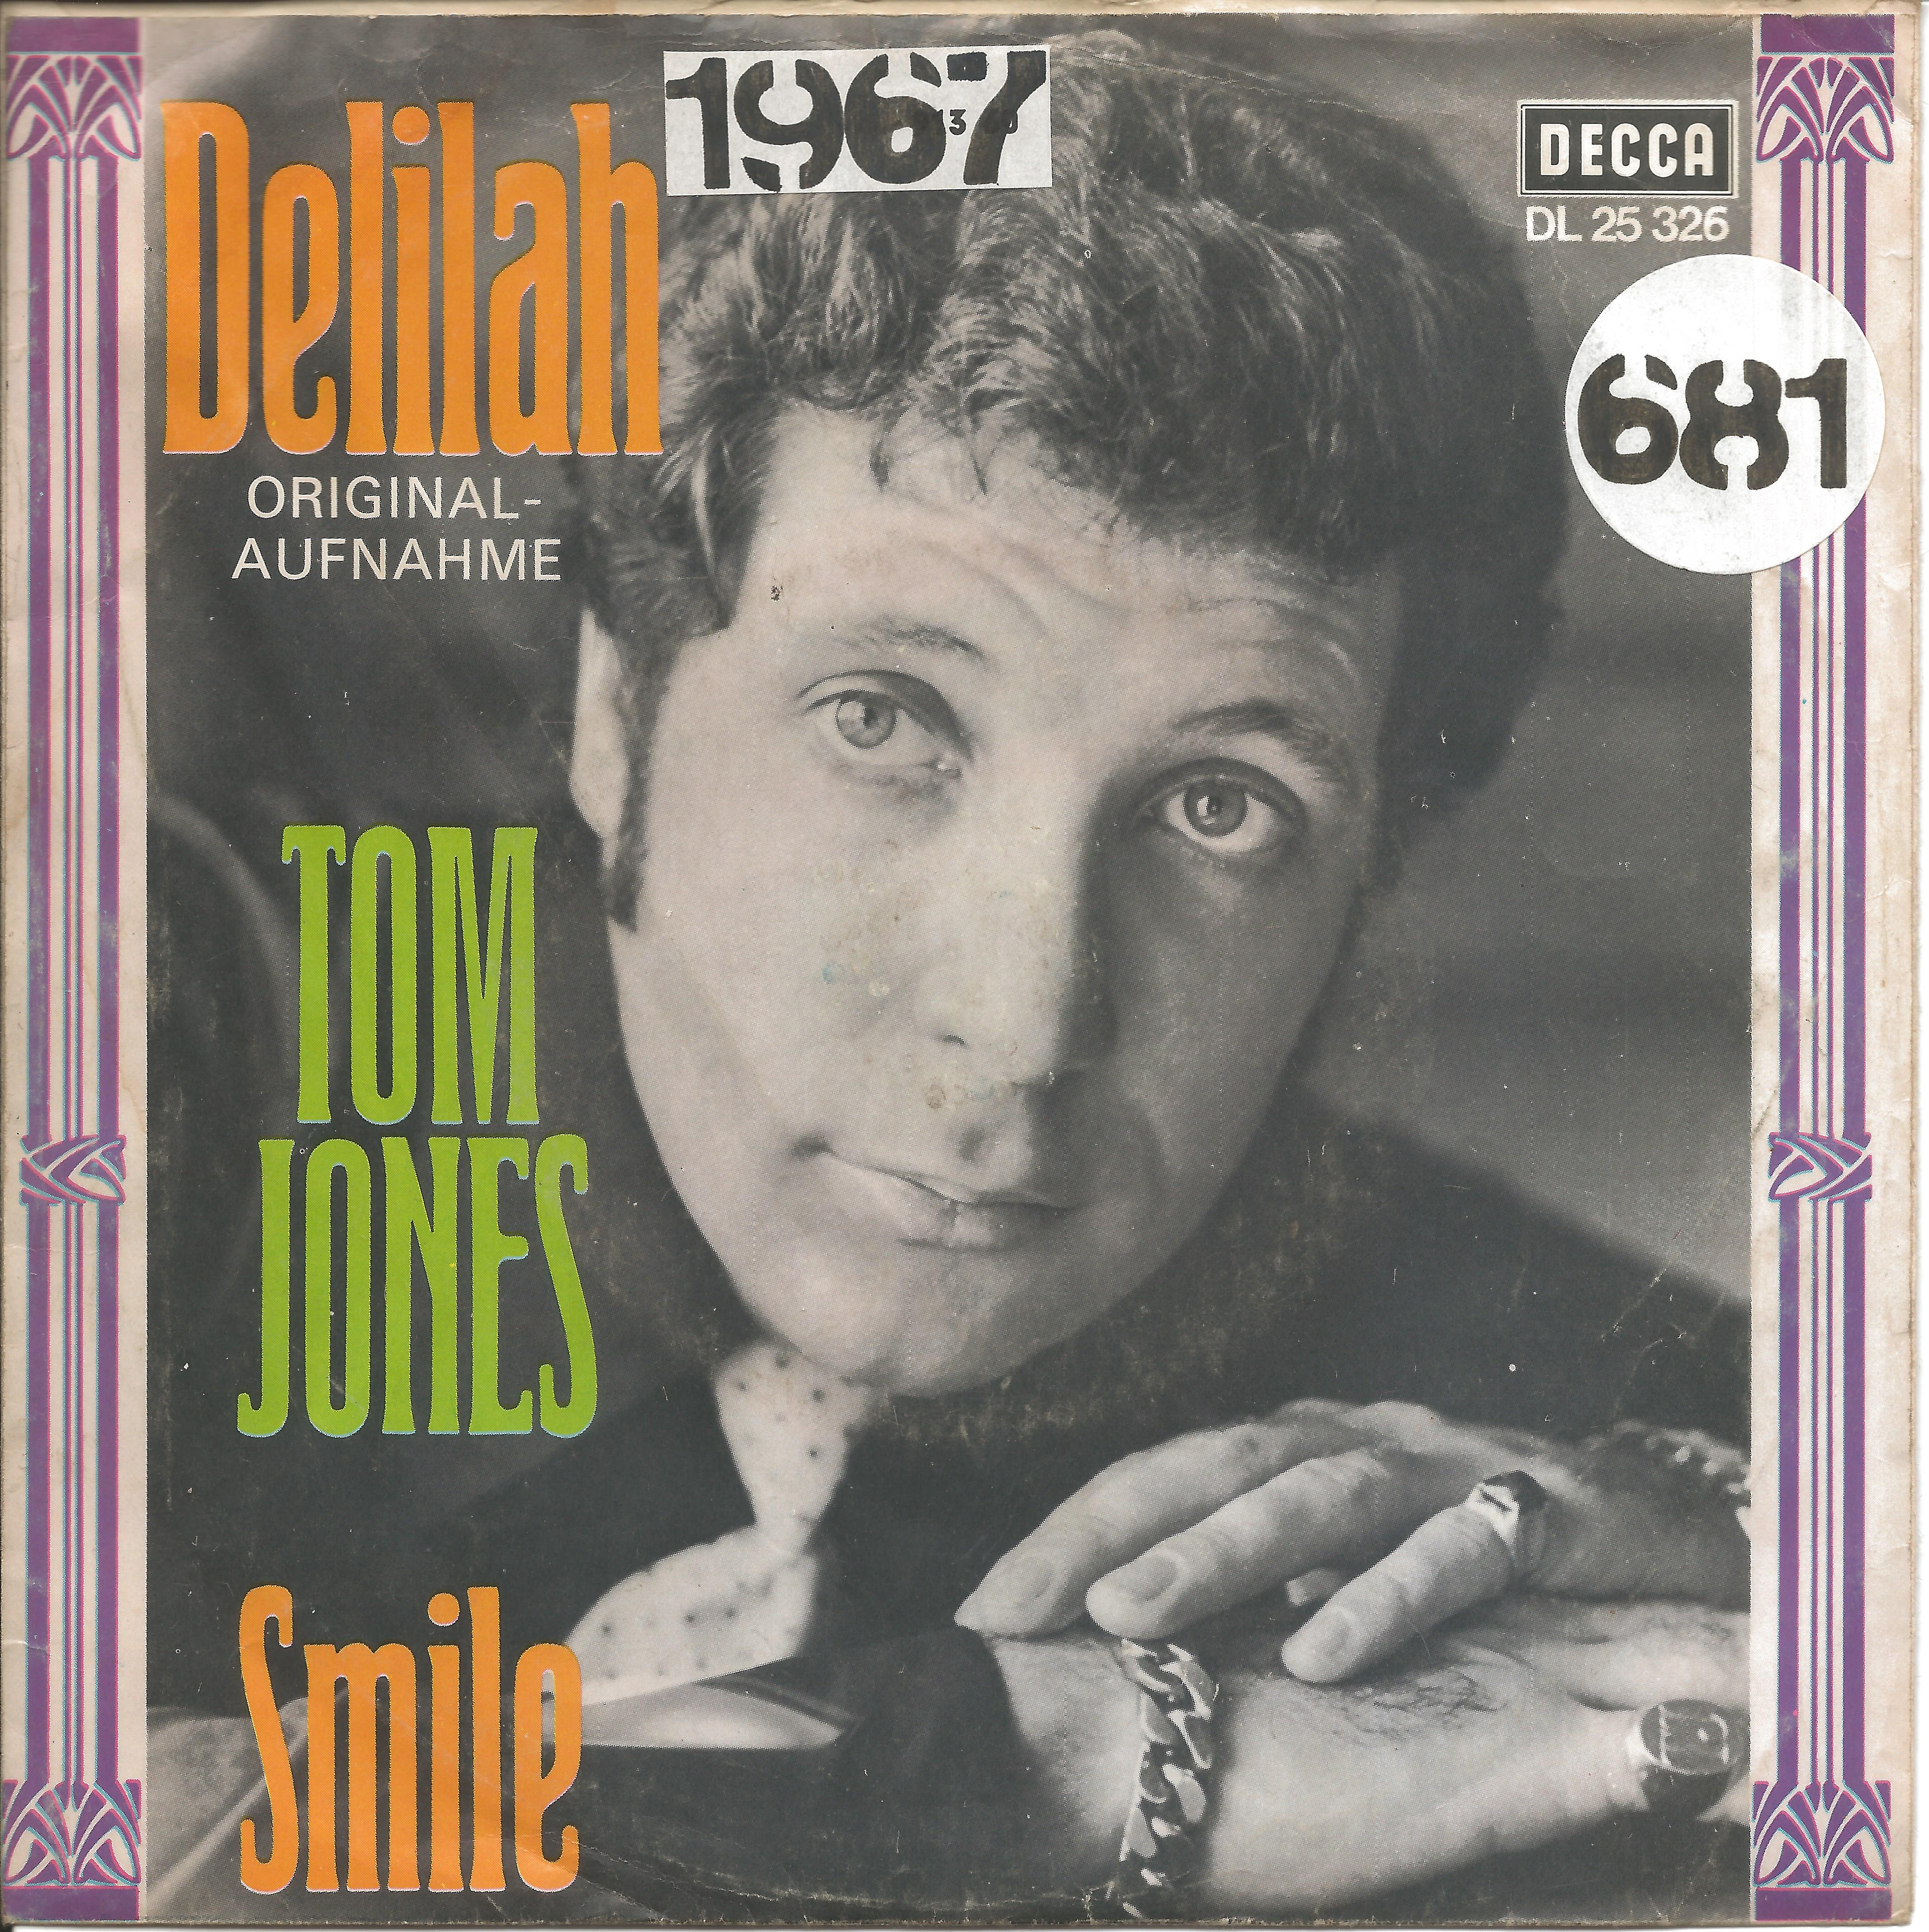 Tom Jones Delilah 1967 Single